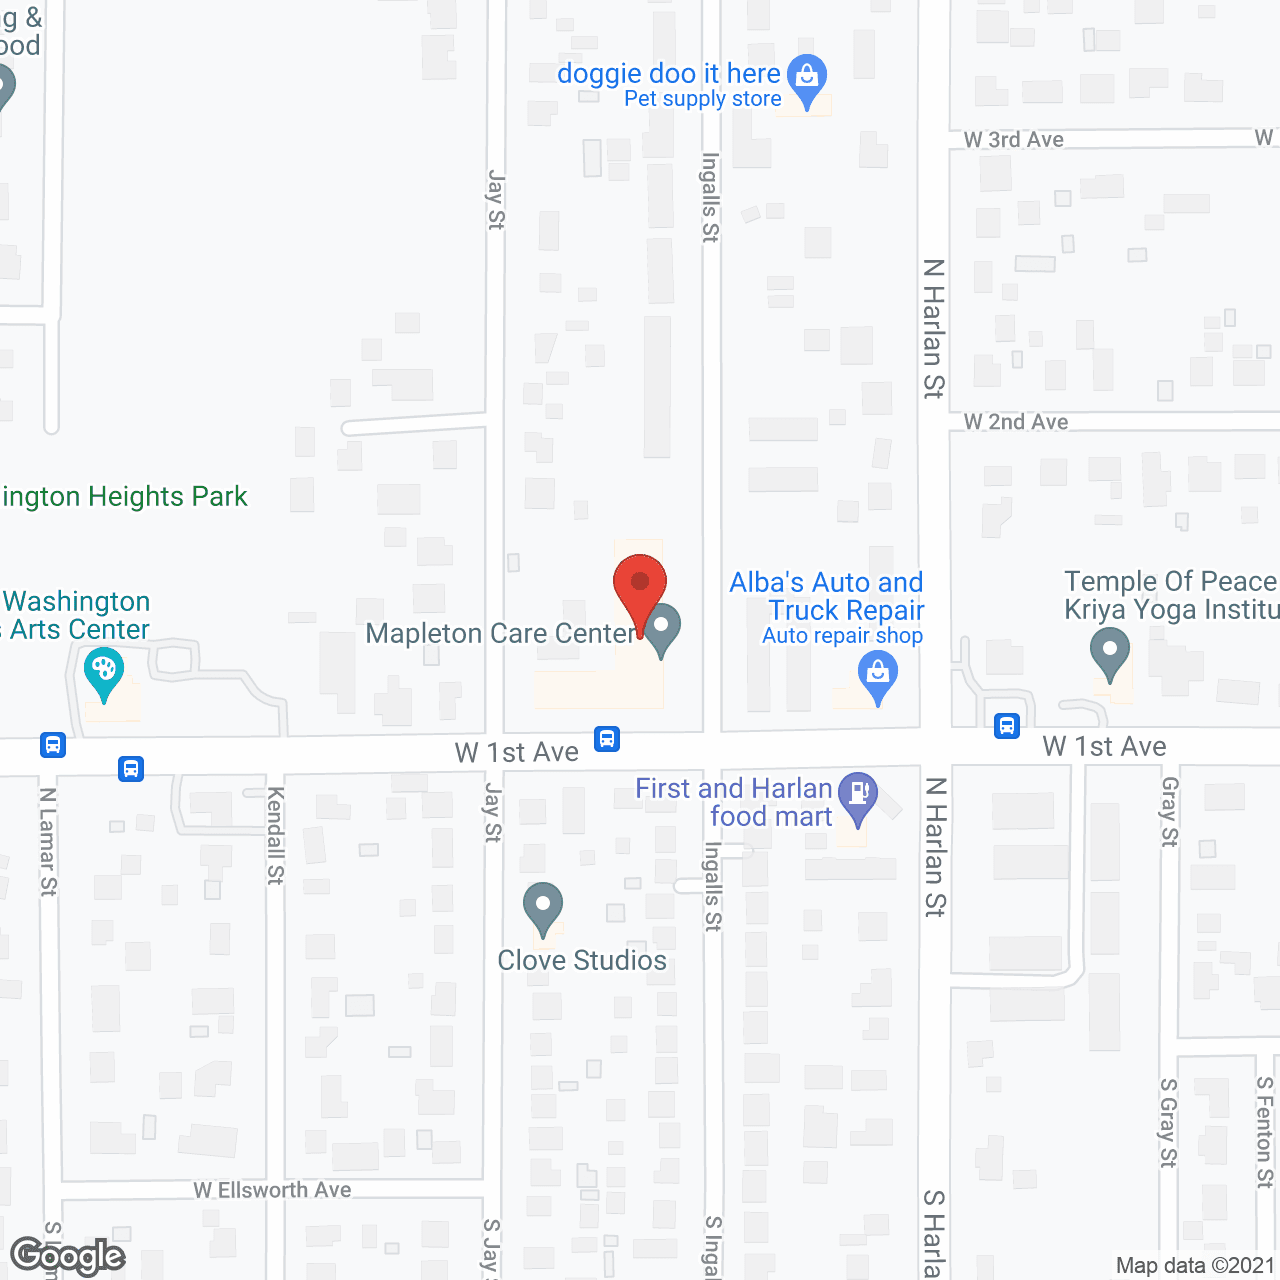 Mapleton Care Center in google map